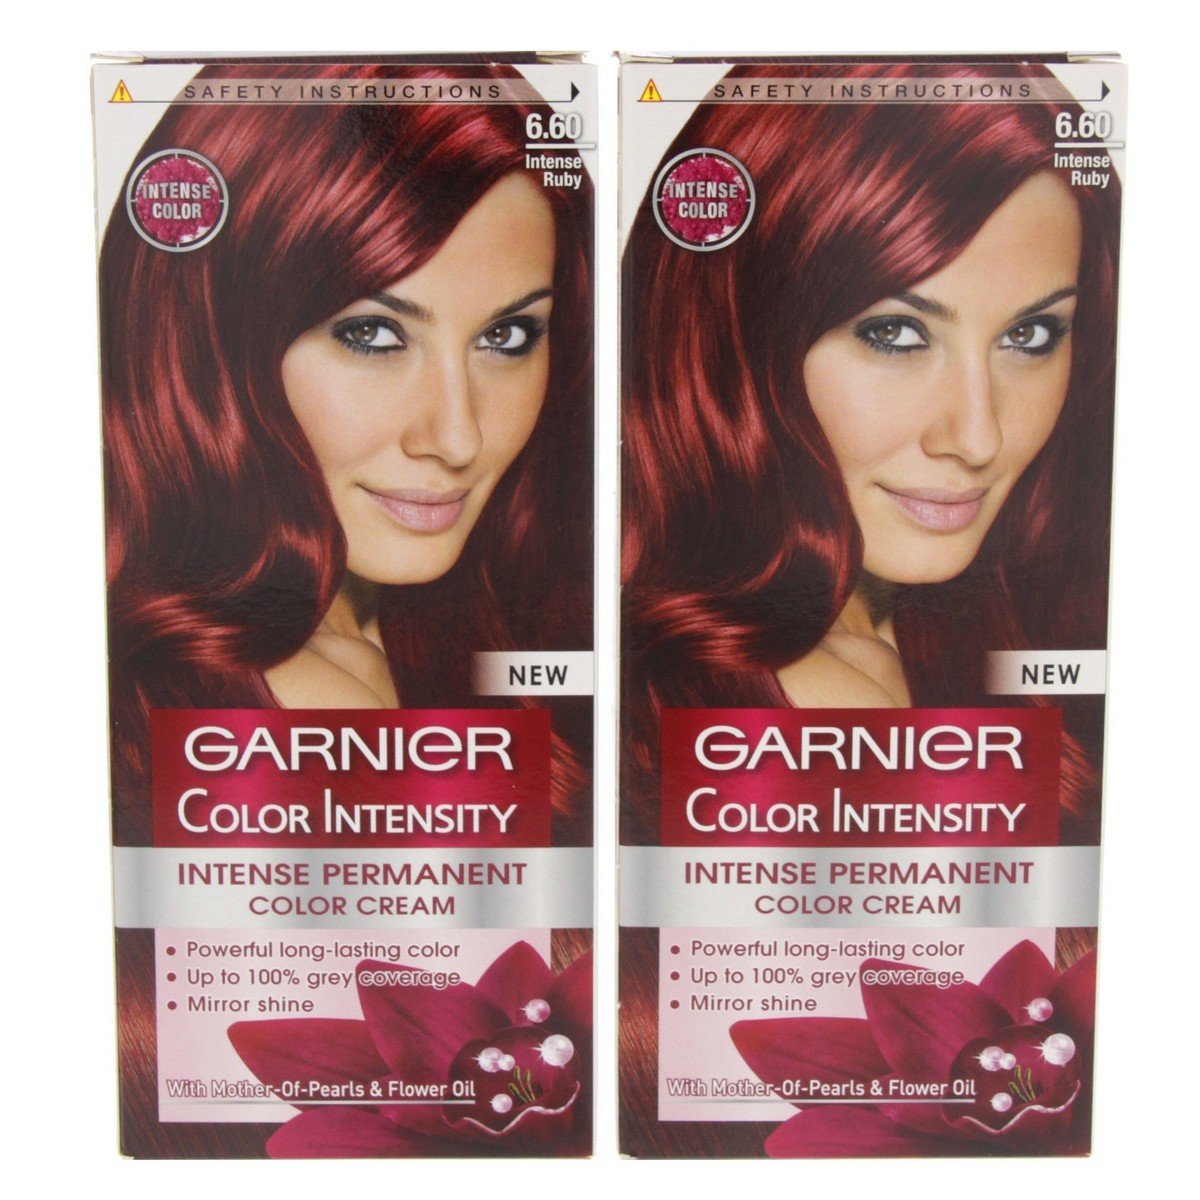 Garnier Color Intensity Permanent Color Cream 6.60 Intense Ruby 1+1